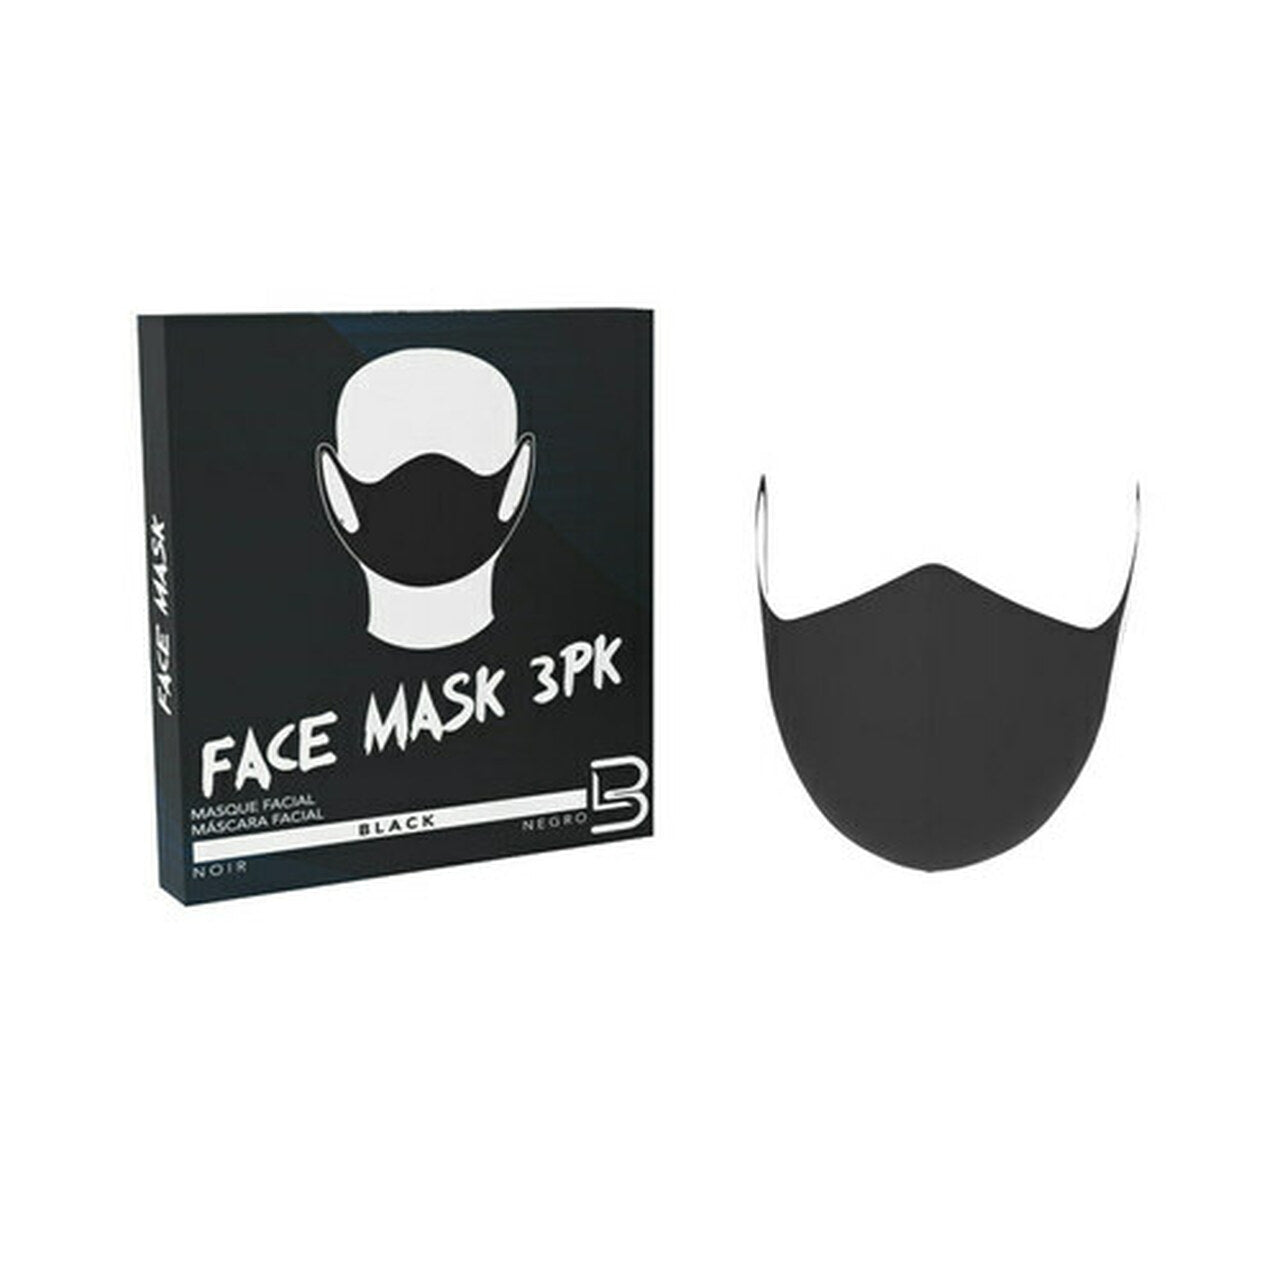 Face Mask - 3 Pack - Black